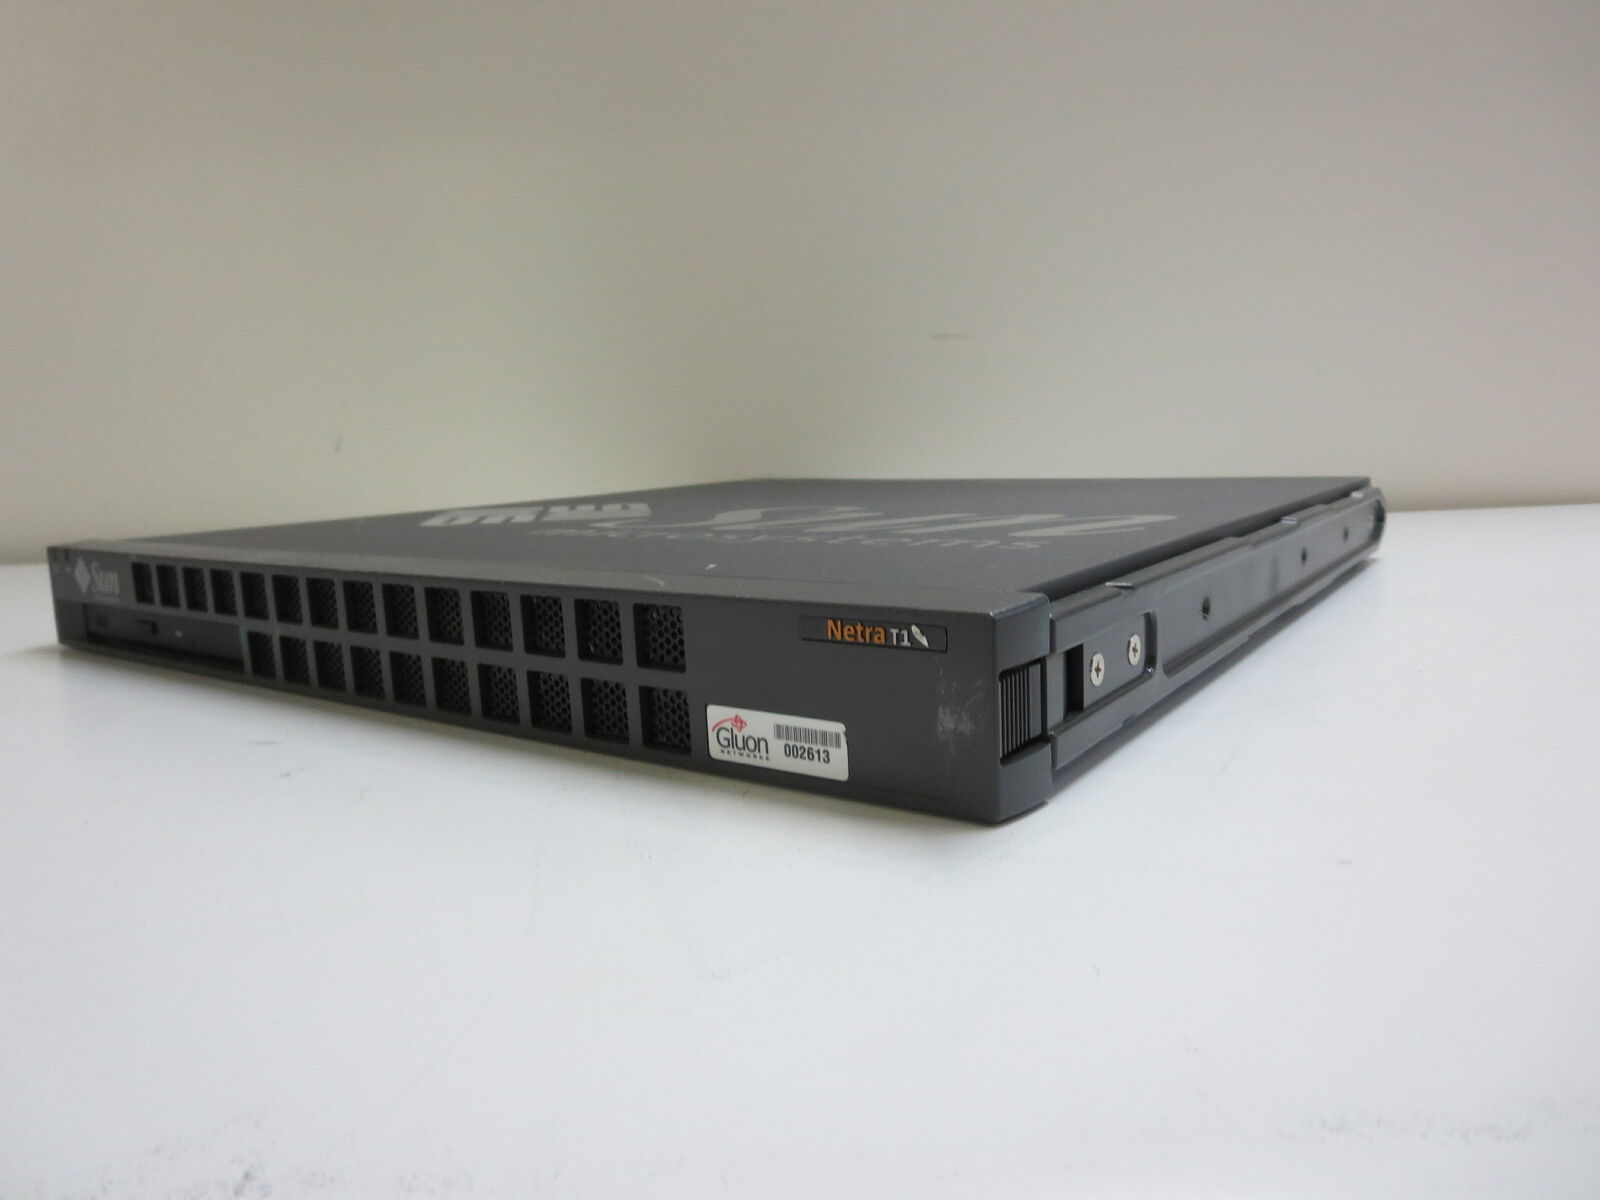 SUN MICRO 380-0388-02 Sun Microsystems Netra T1 Model FJ2A Network Server 